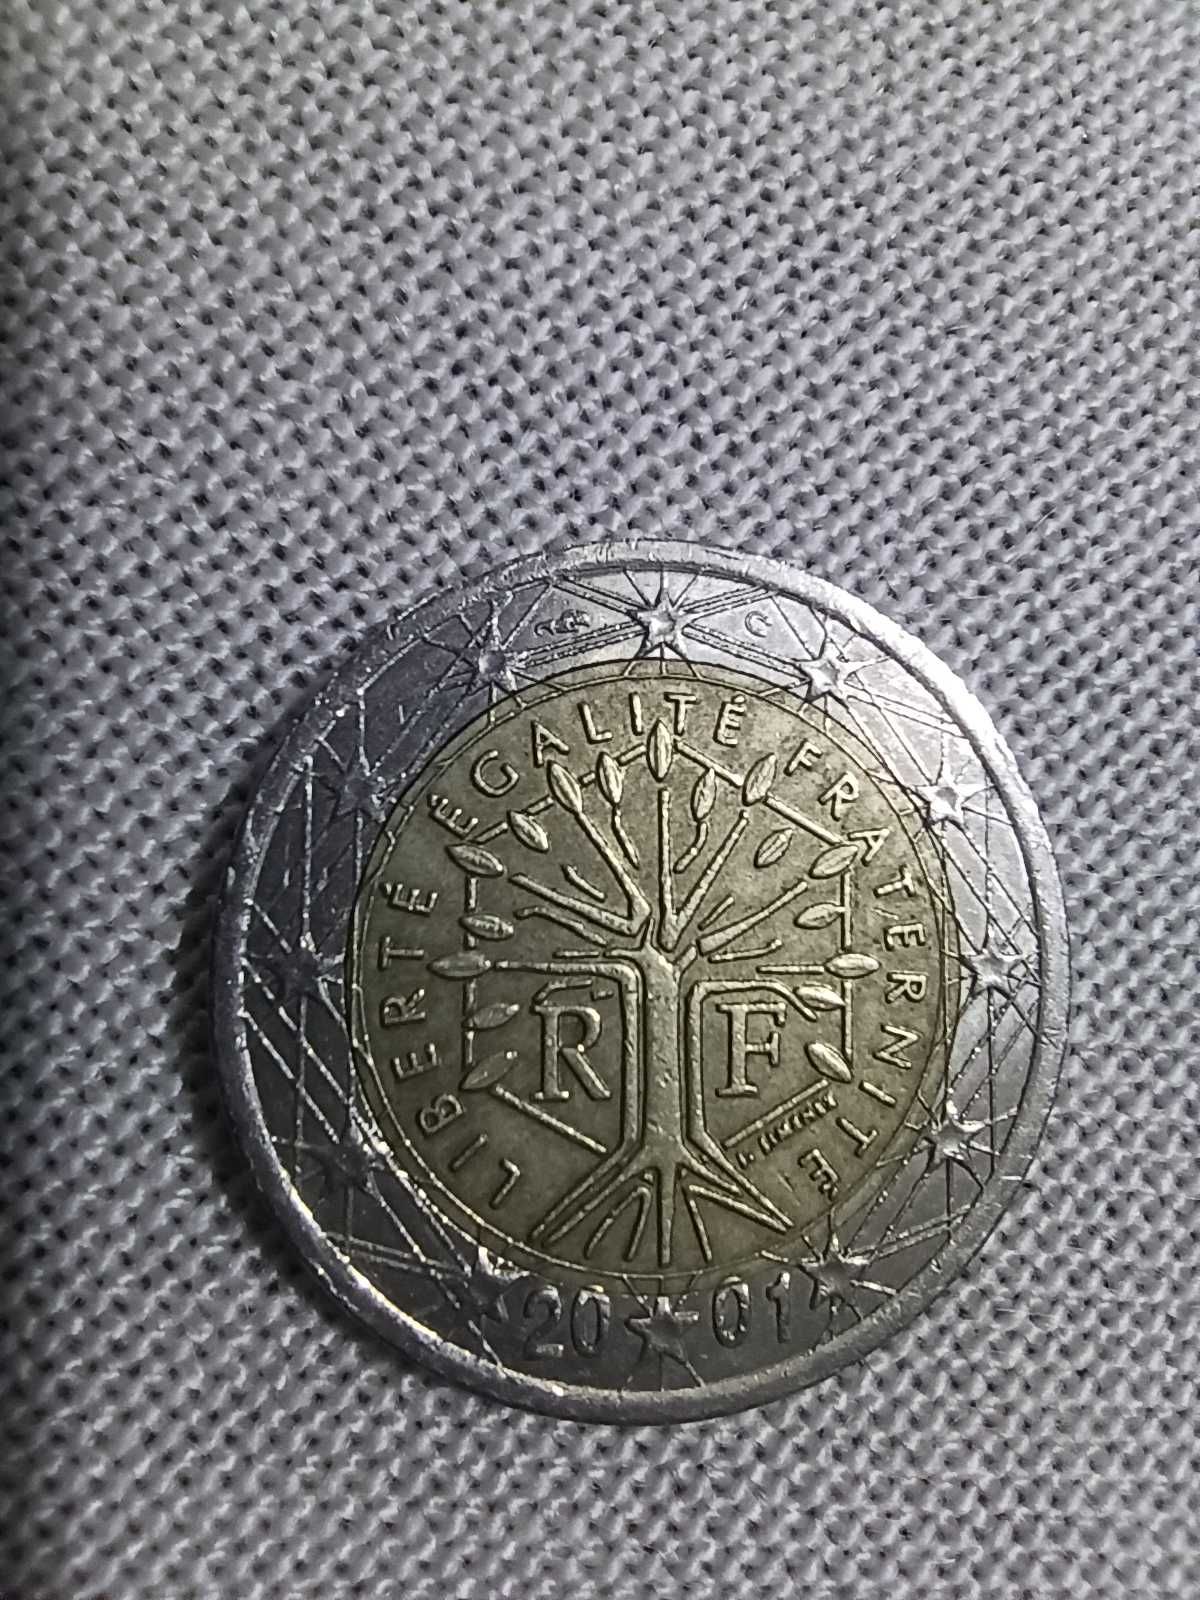 2 Euro moneta Liberte Egalite Fraternite 2001